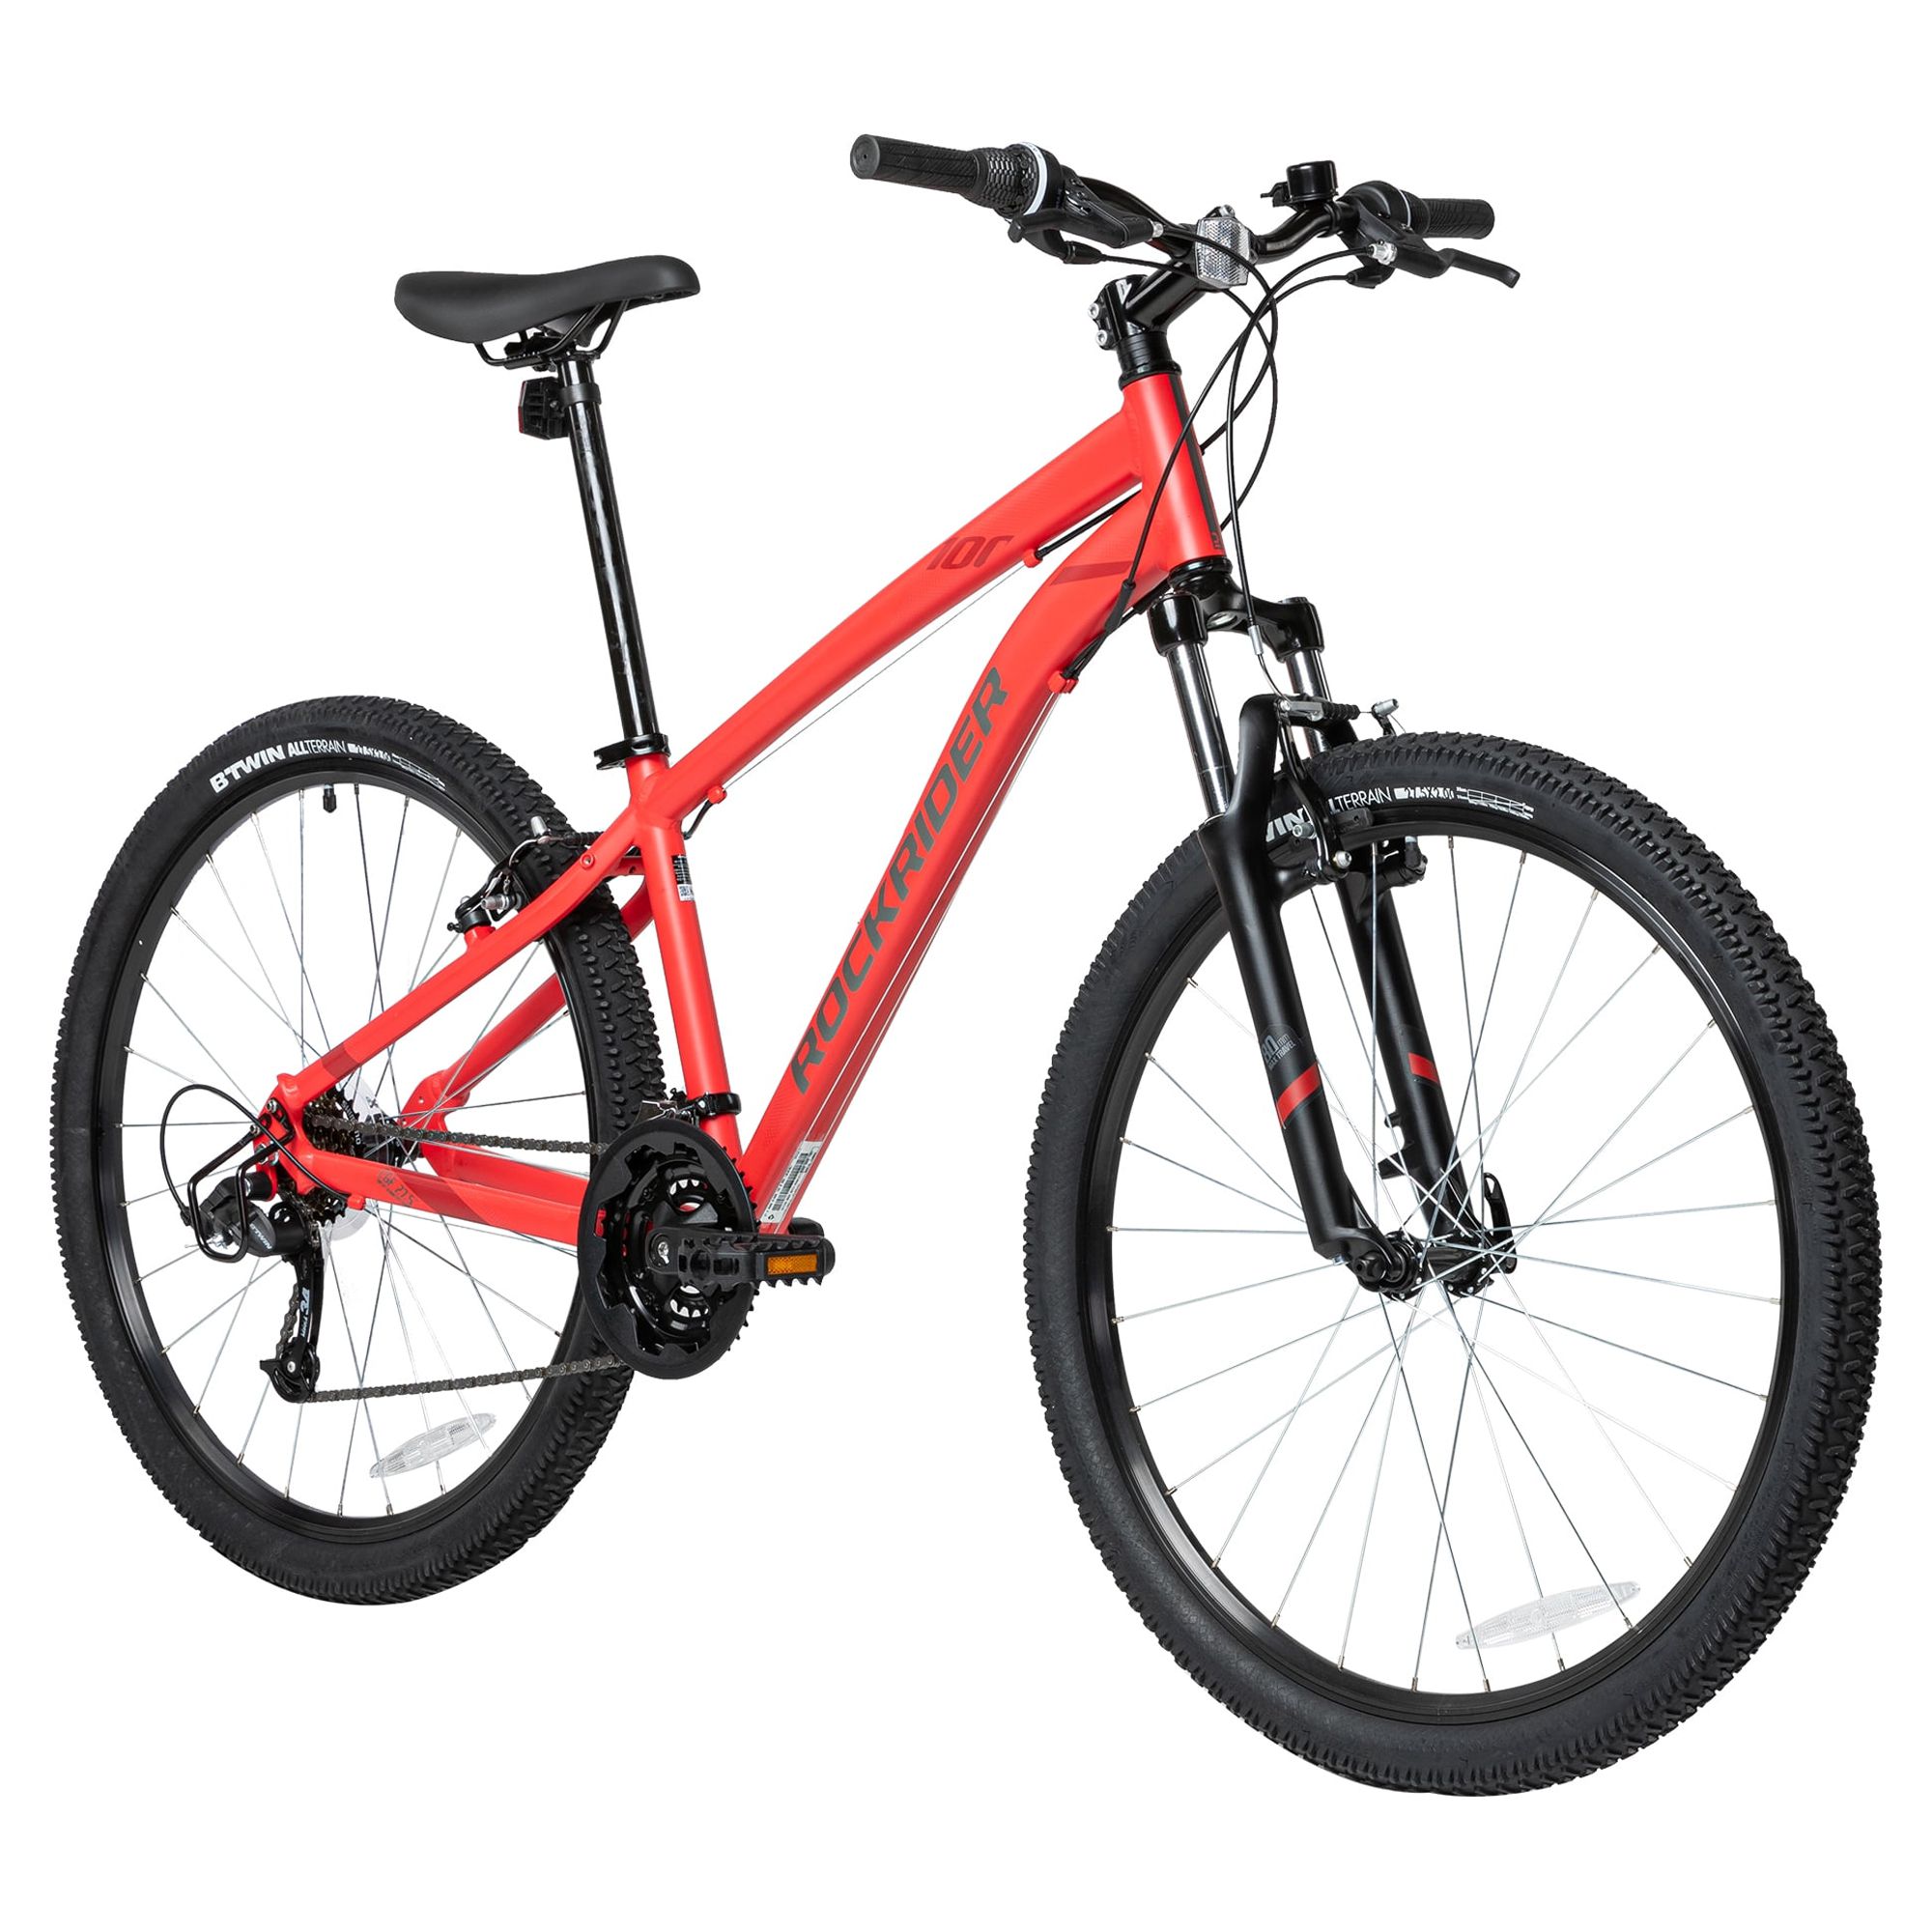 Rockrider ST100, 21 Speed Mountain Bike, 27.5", Unisex, Red, Extra Large - image 1 of 12